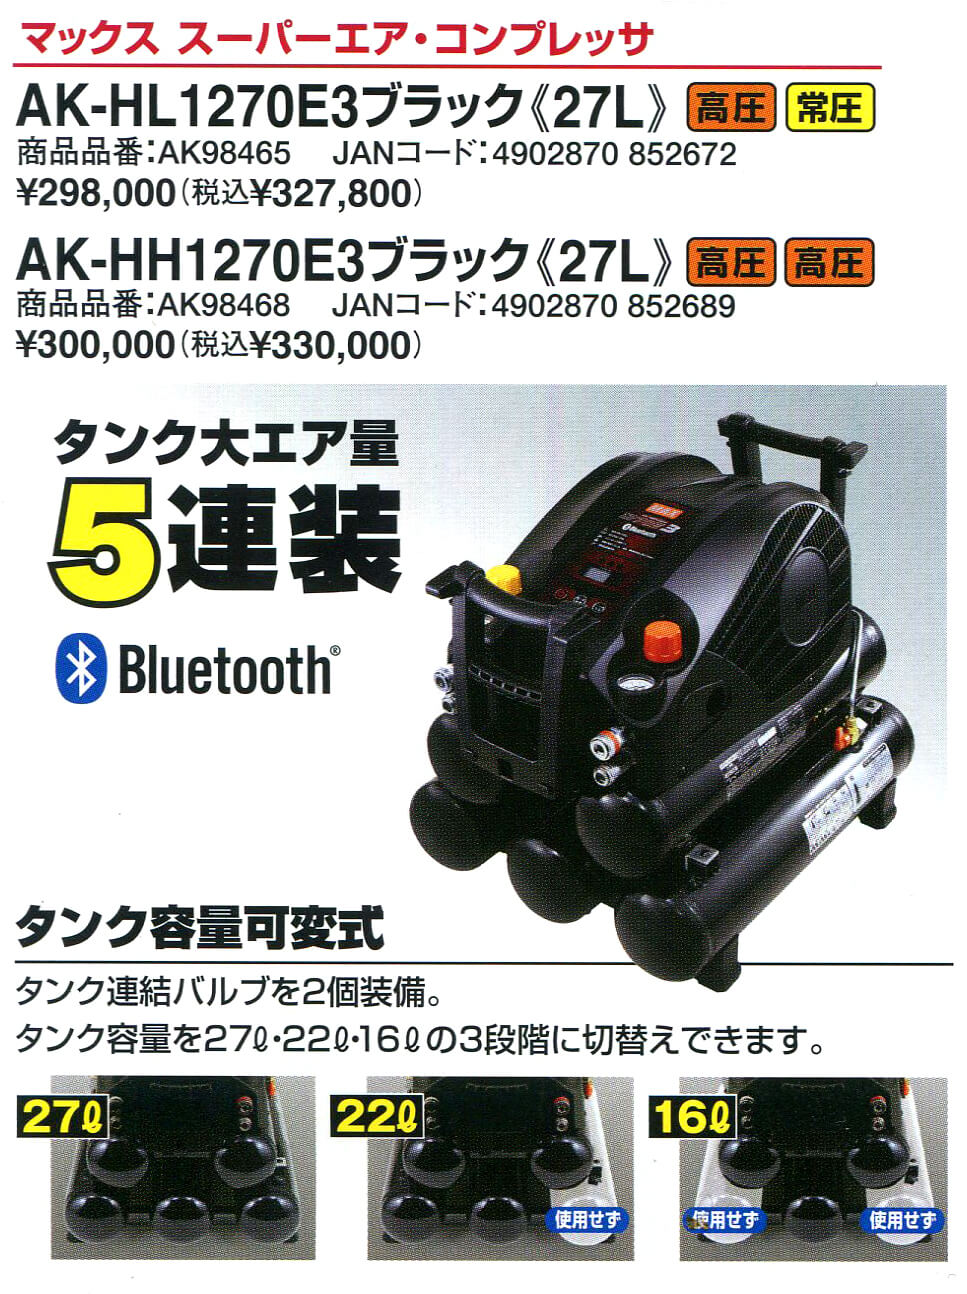 ☆品☆ MAX マックス 常圧 高圧 エアコンプレッサー AK-HL1270E3 電動工具 エアー工具 エアーツール ブラック 静音 75719